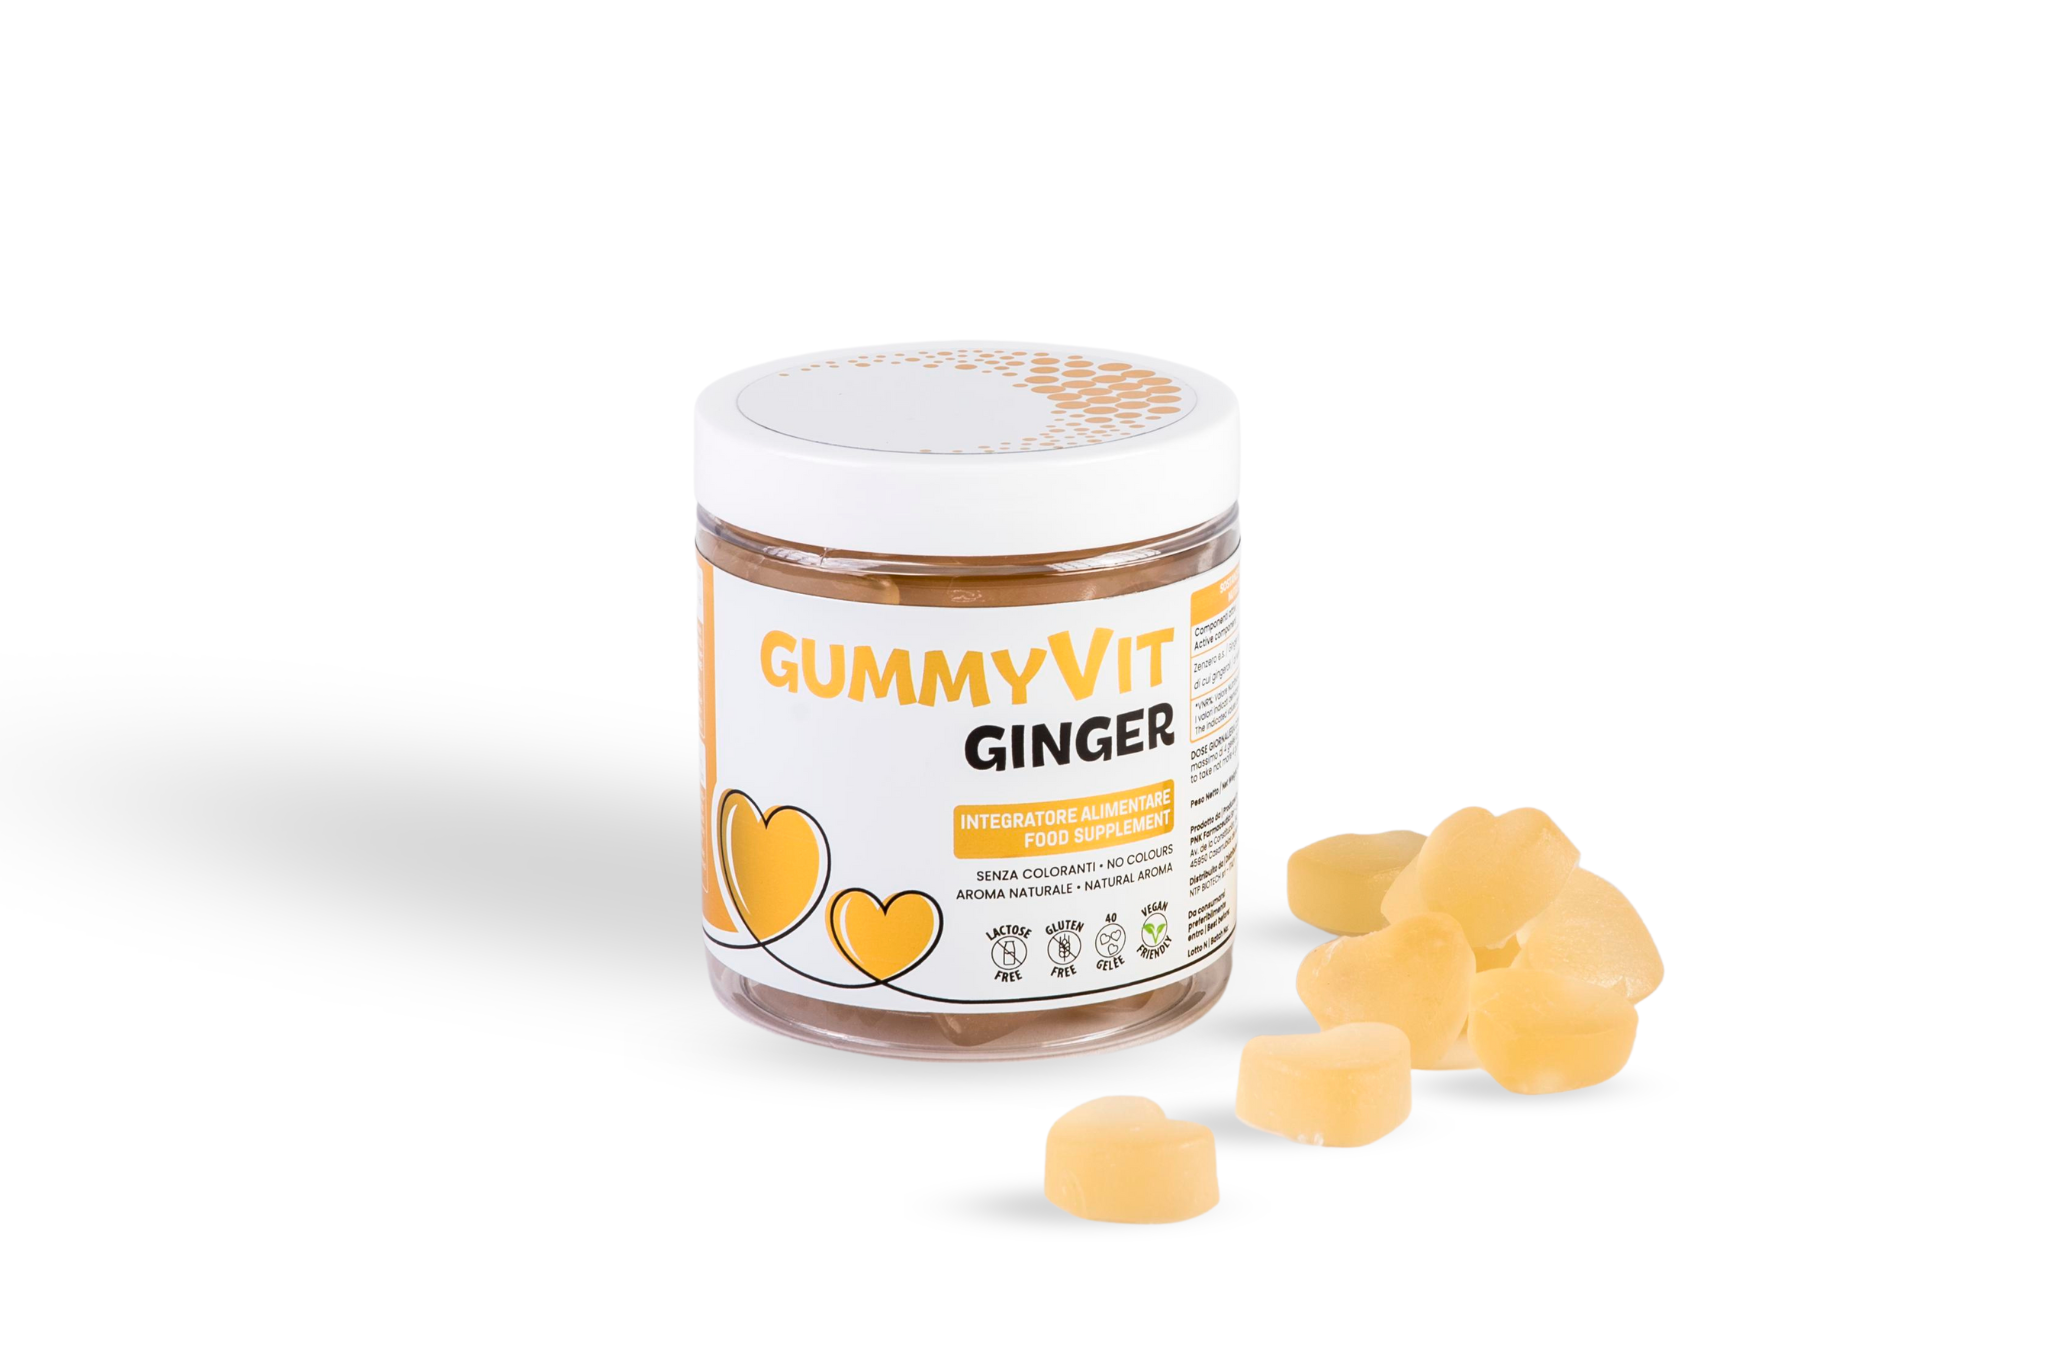 Confezione di Gummyvit Ginger, gomme masticabili arricchite con Zenzero per migliorare la digestione e ridurre i gas in eccesso, mostrando il logo di NTP BIOTECH e l'immagine dello Zenzero